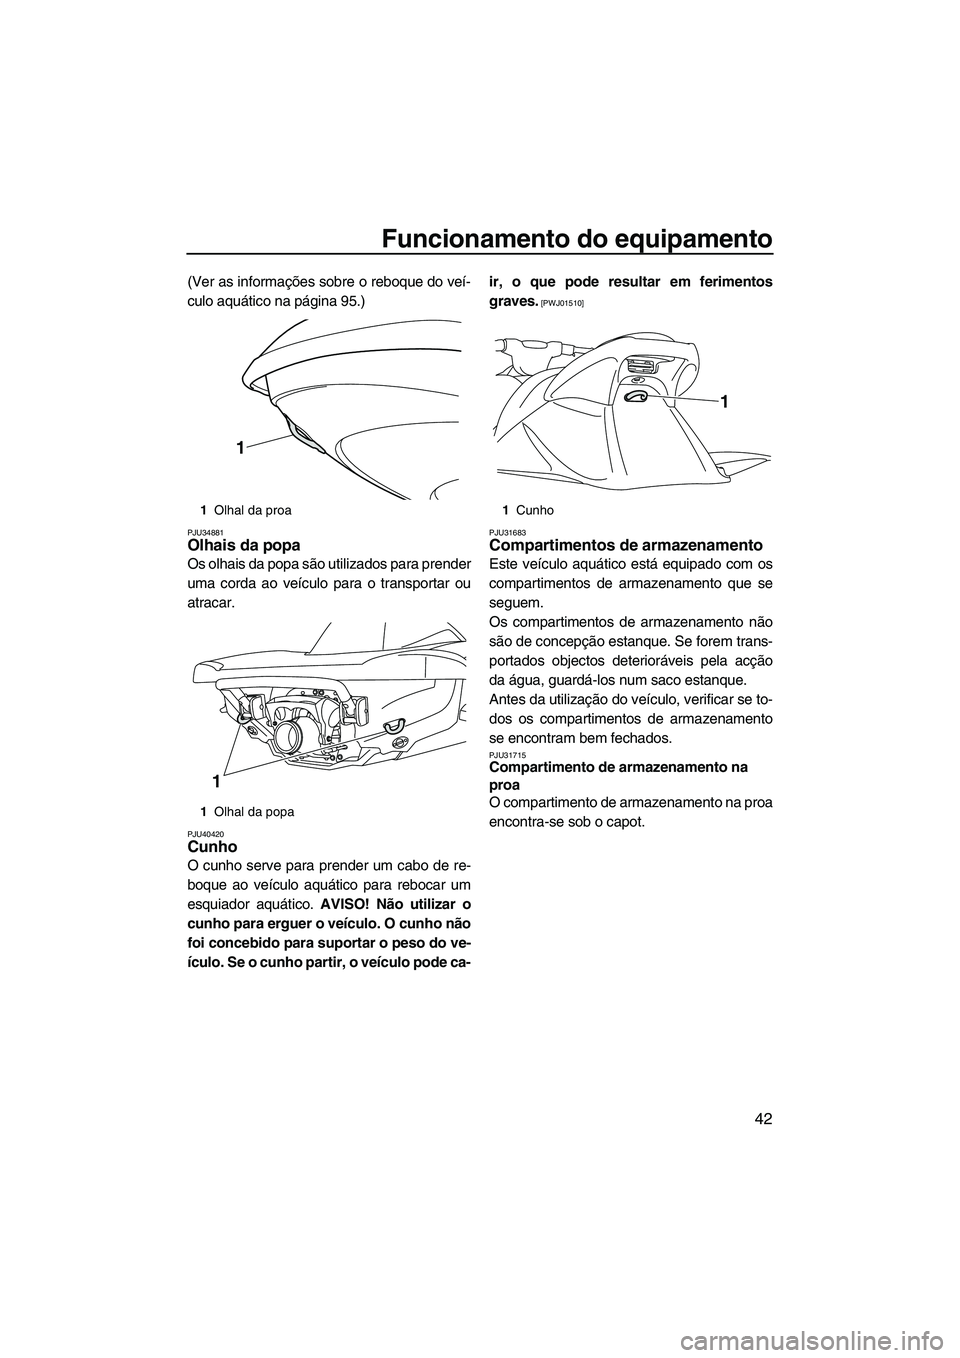 YAMAHA VXR 2013  Manual de utilização (in Portuguese) Funcionamento do equipamento
42
(Ver as informações sobre o reboque do veí-
culo aquático na página 95.)
PJU34881Olhais da popa 
Os olhais da popa são utilizados para prender
uma corda ao veícu